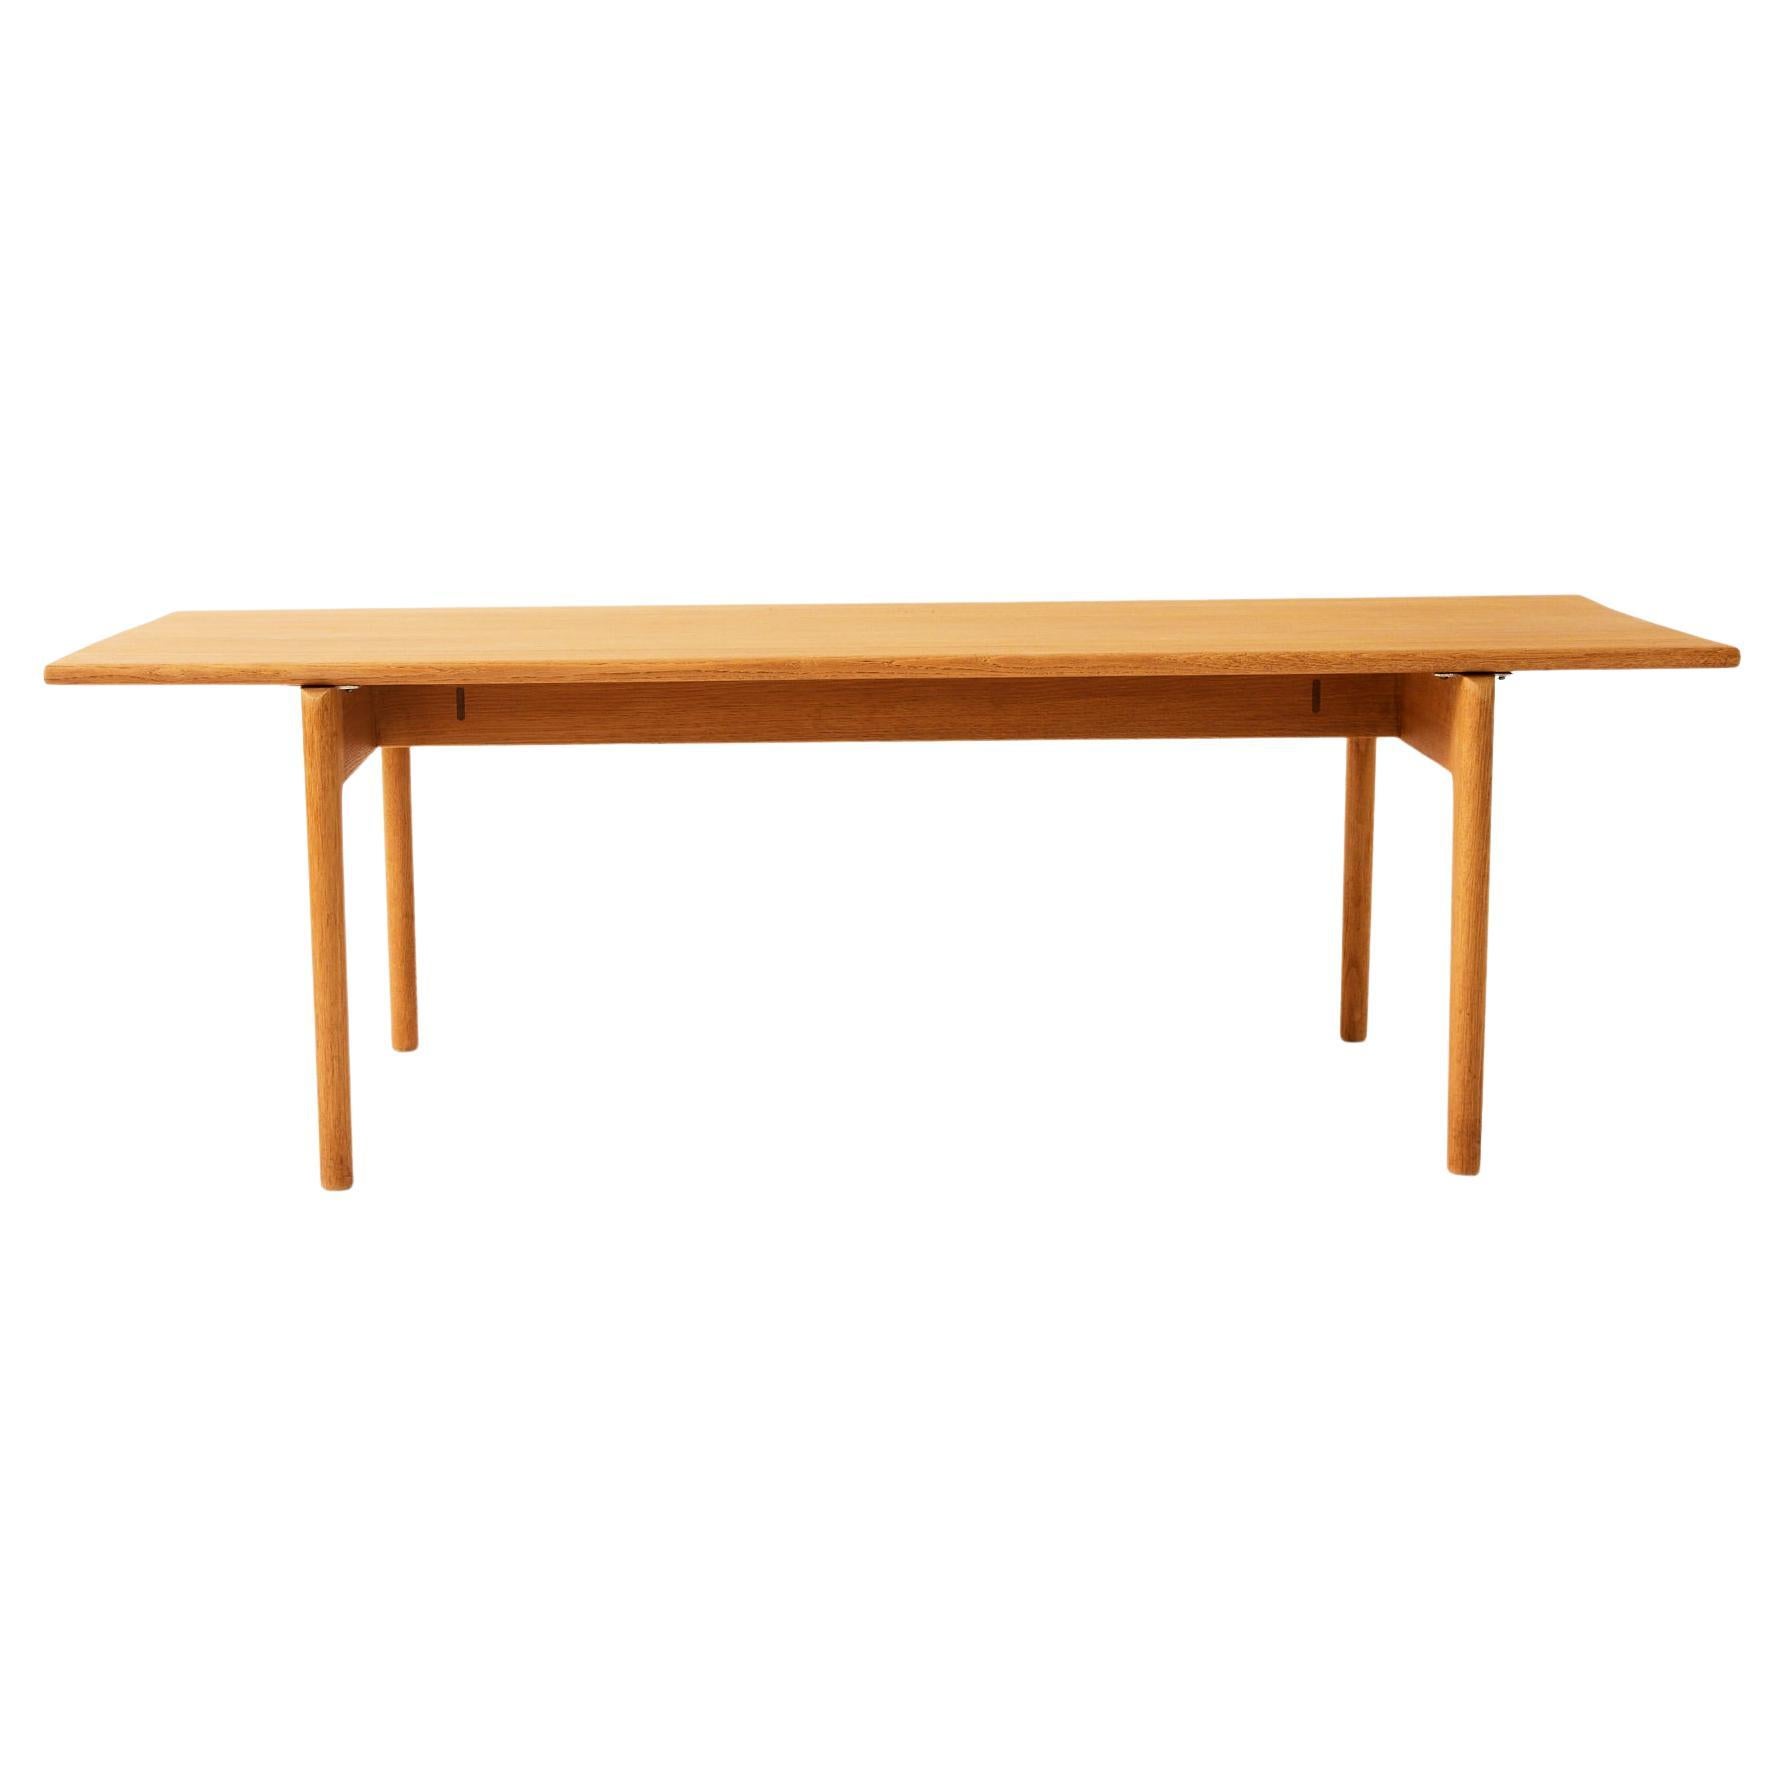 La table basse rectangulaire en chêne massif AT-15 de Hans J. Wegner est élégante et discrète dans son design. Fabriqué en chêne massif et en très bon état. La marque du fabricant est estampillée sur le dessous de la table. Fabriqué par Andreas